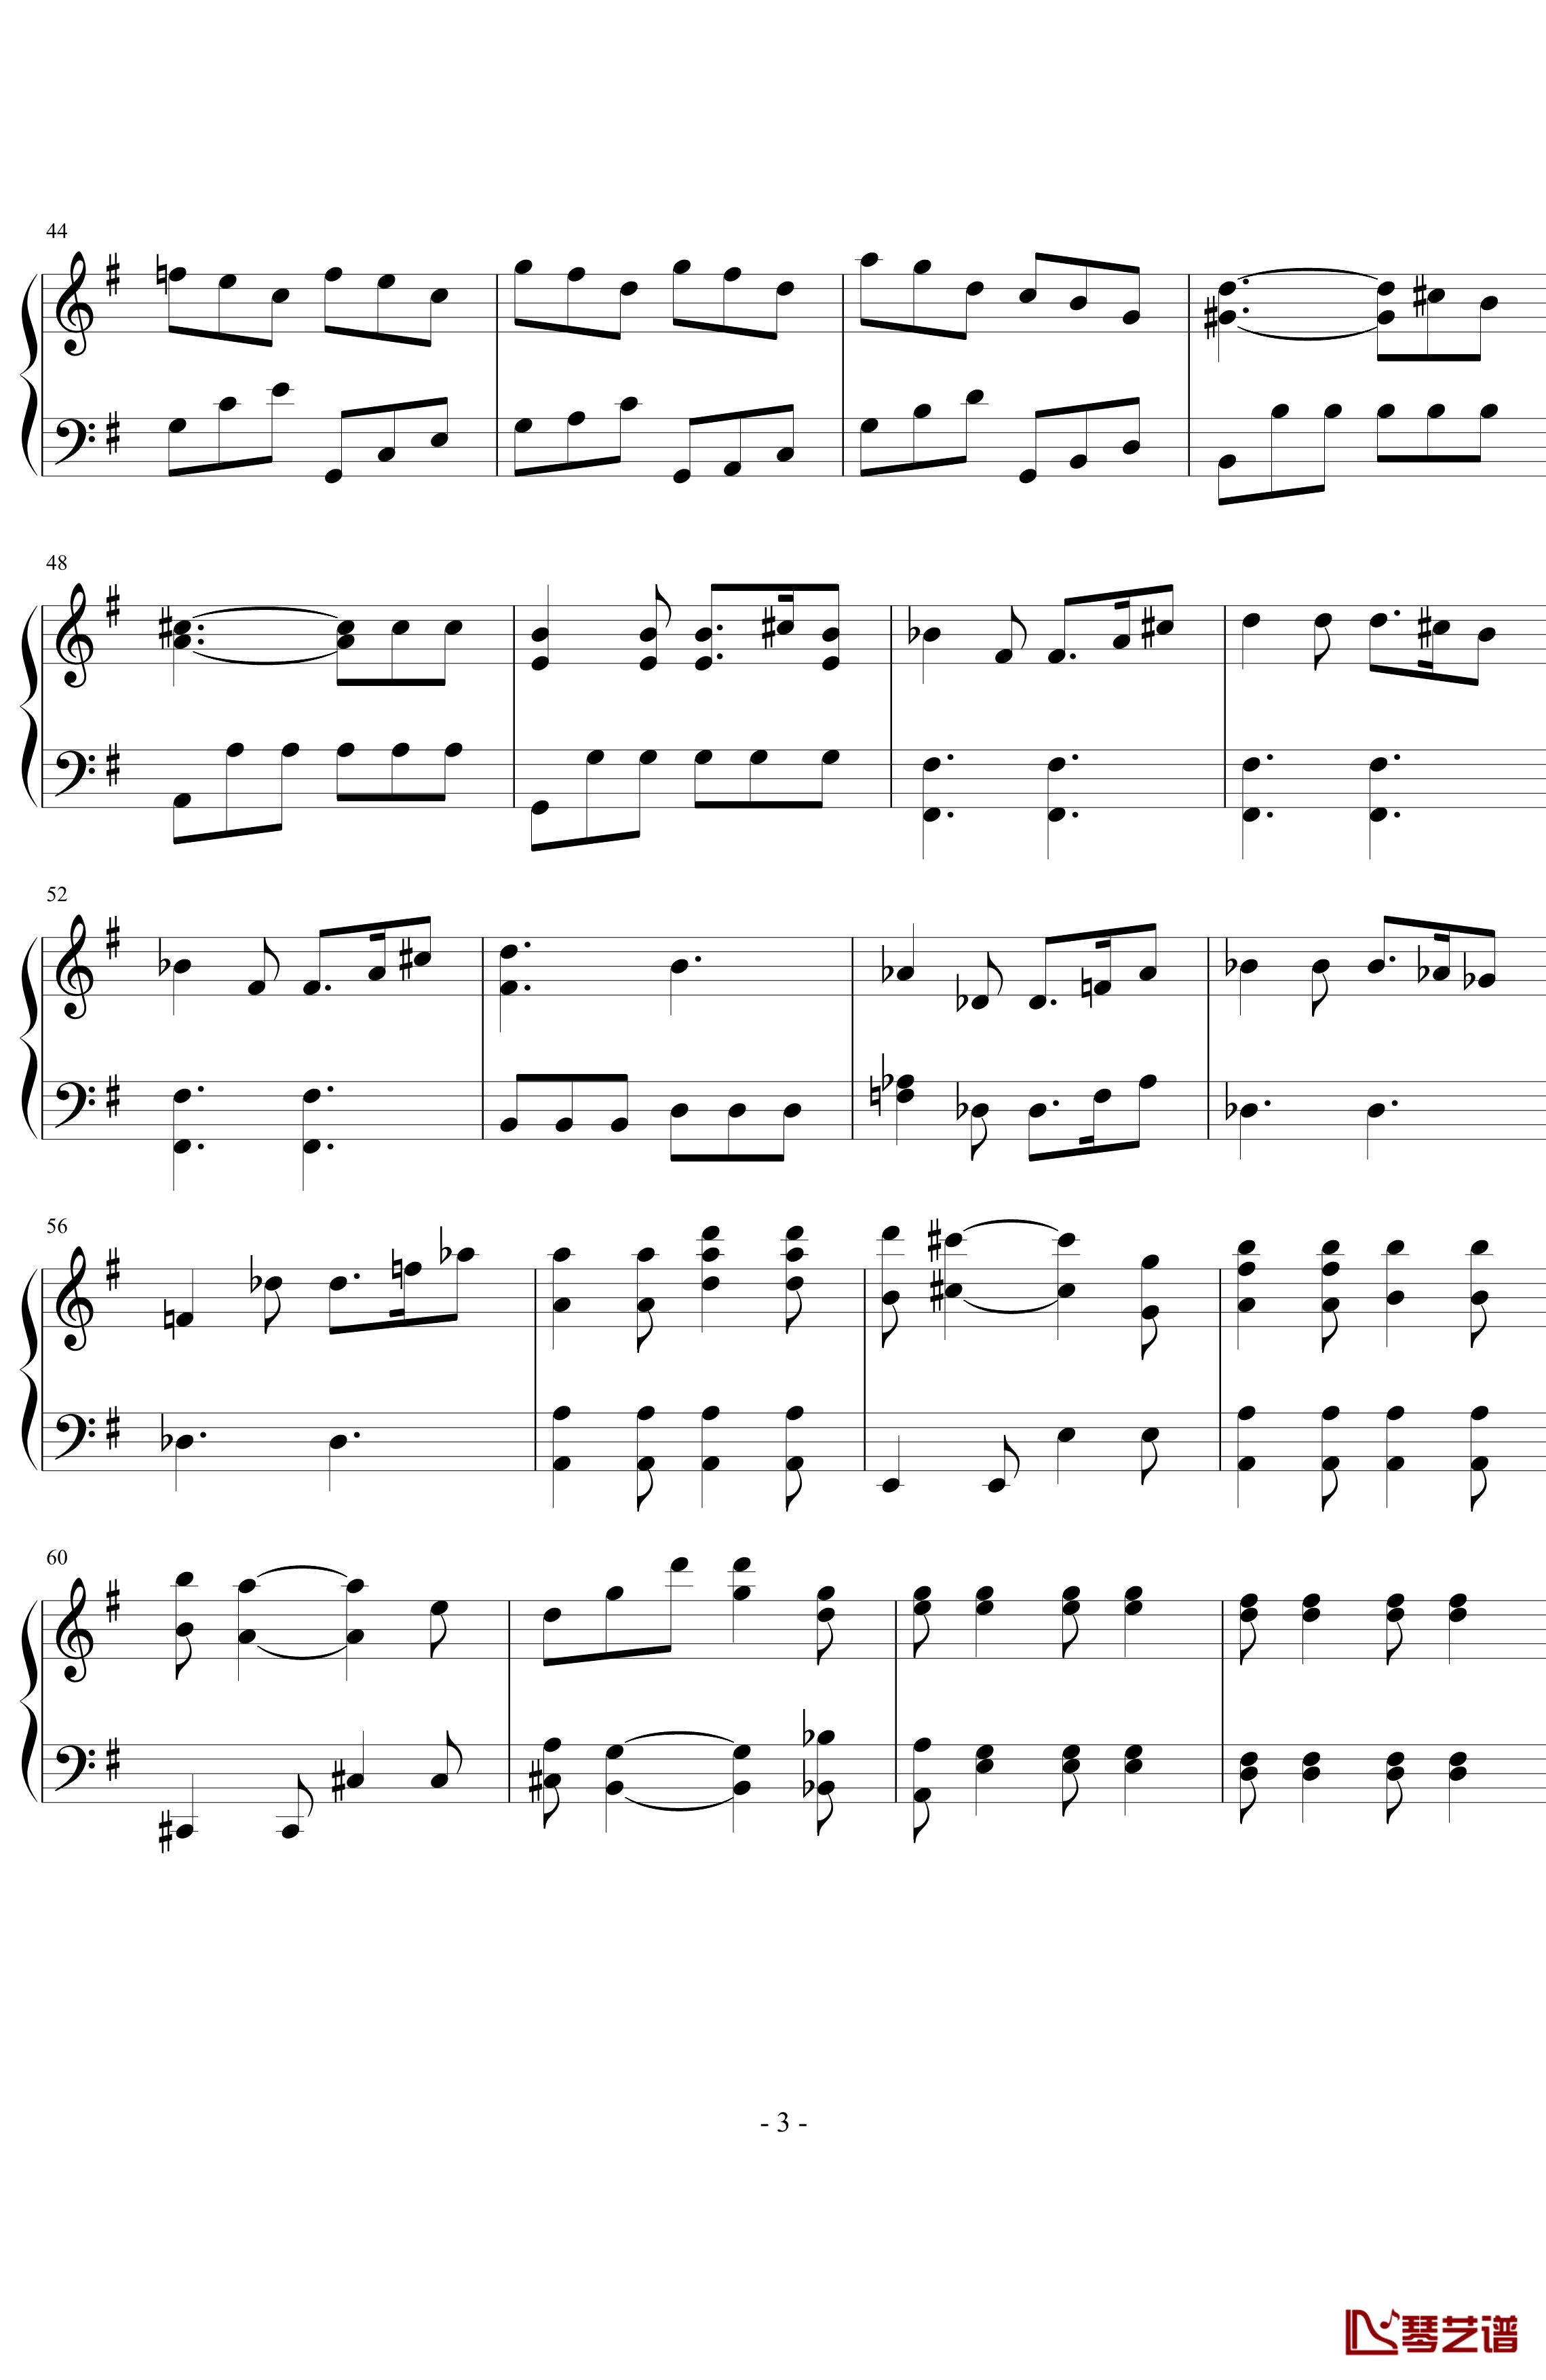 第七号交响曲第一乐章钢琴谱-贝多芬-beethoven3